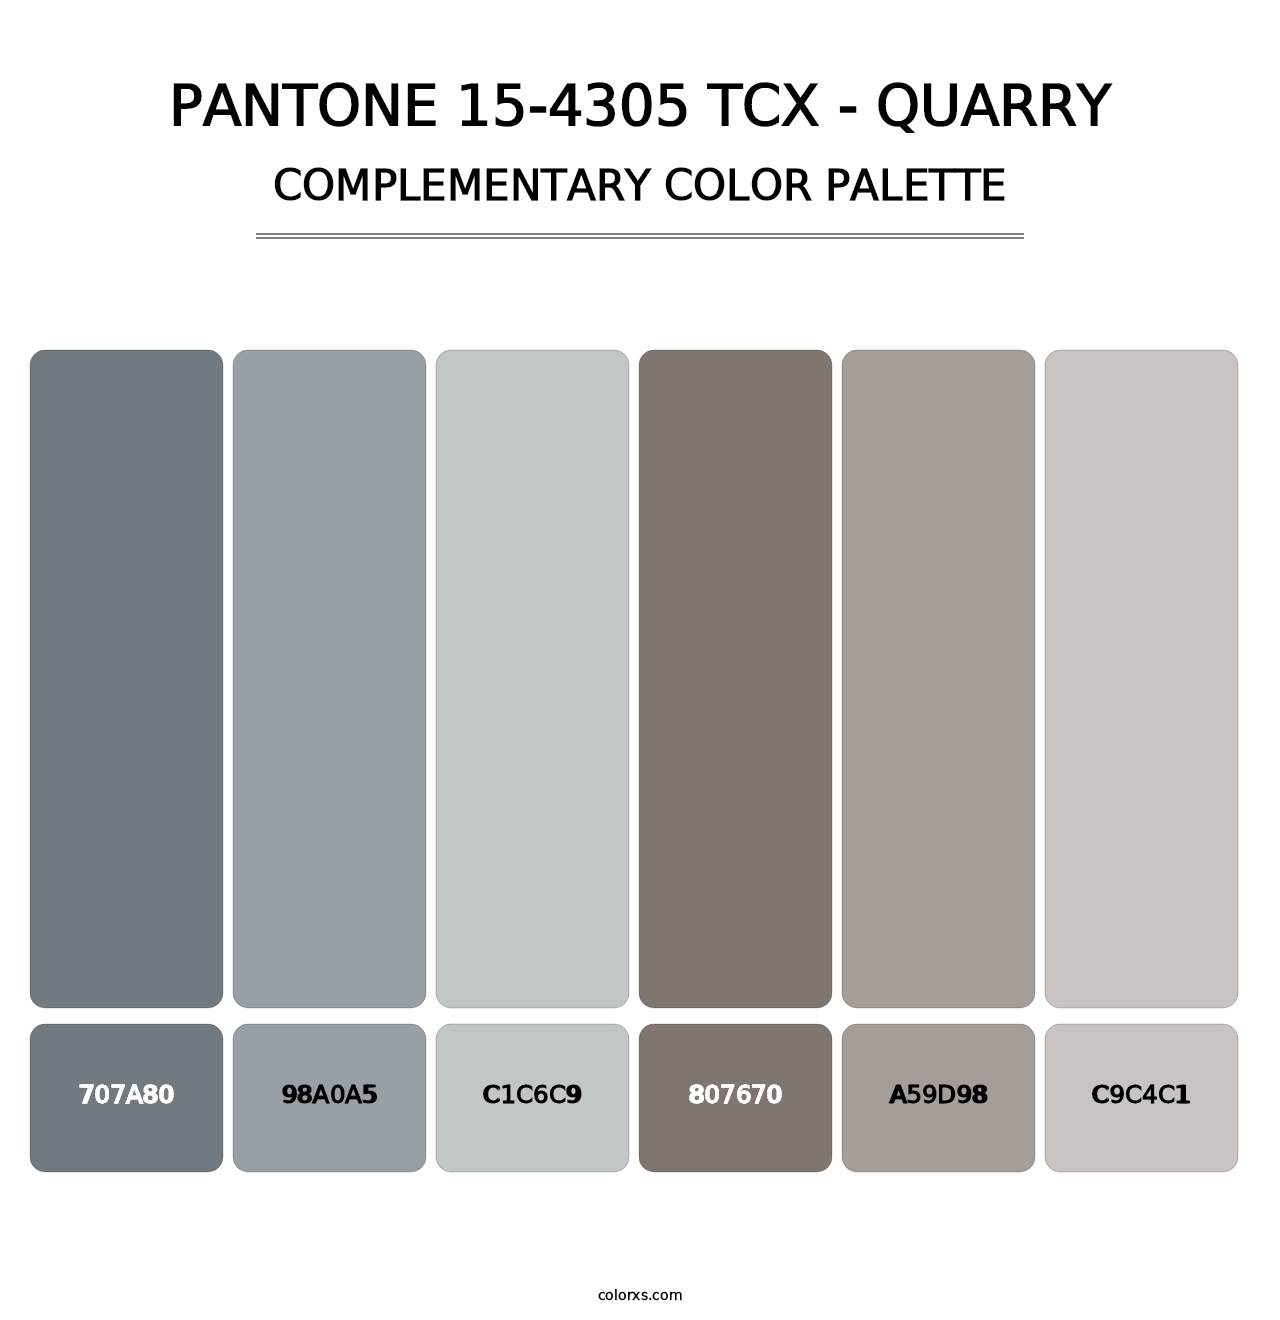 PANTONE 15-4305 TCX - Quarry - Complementary Color Palette